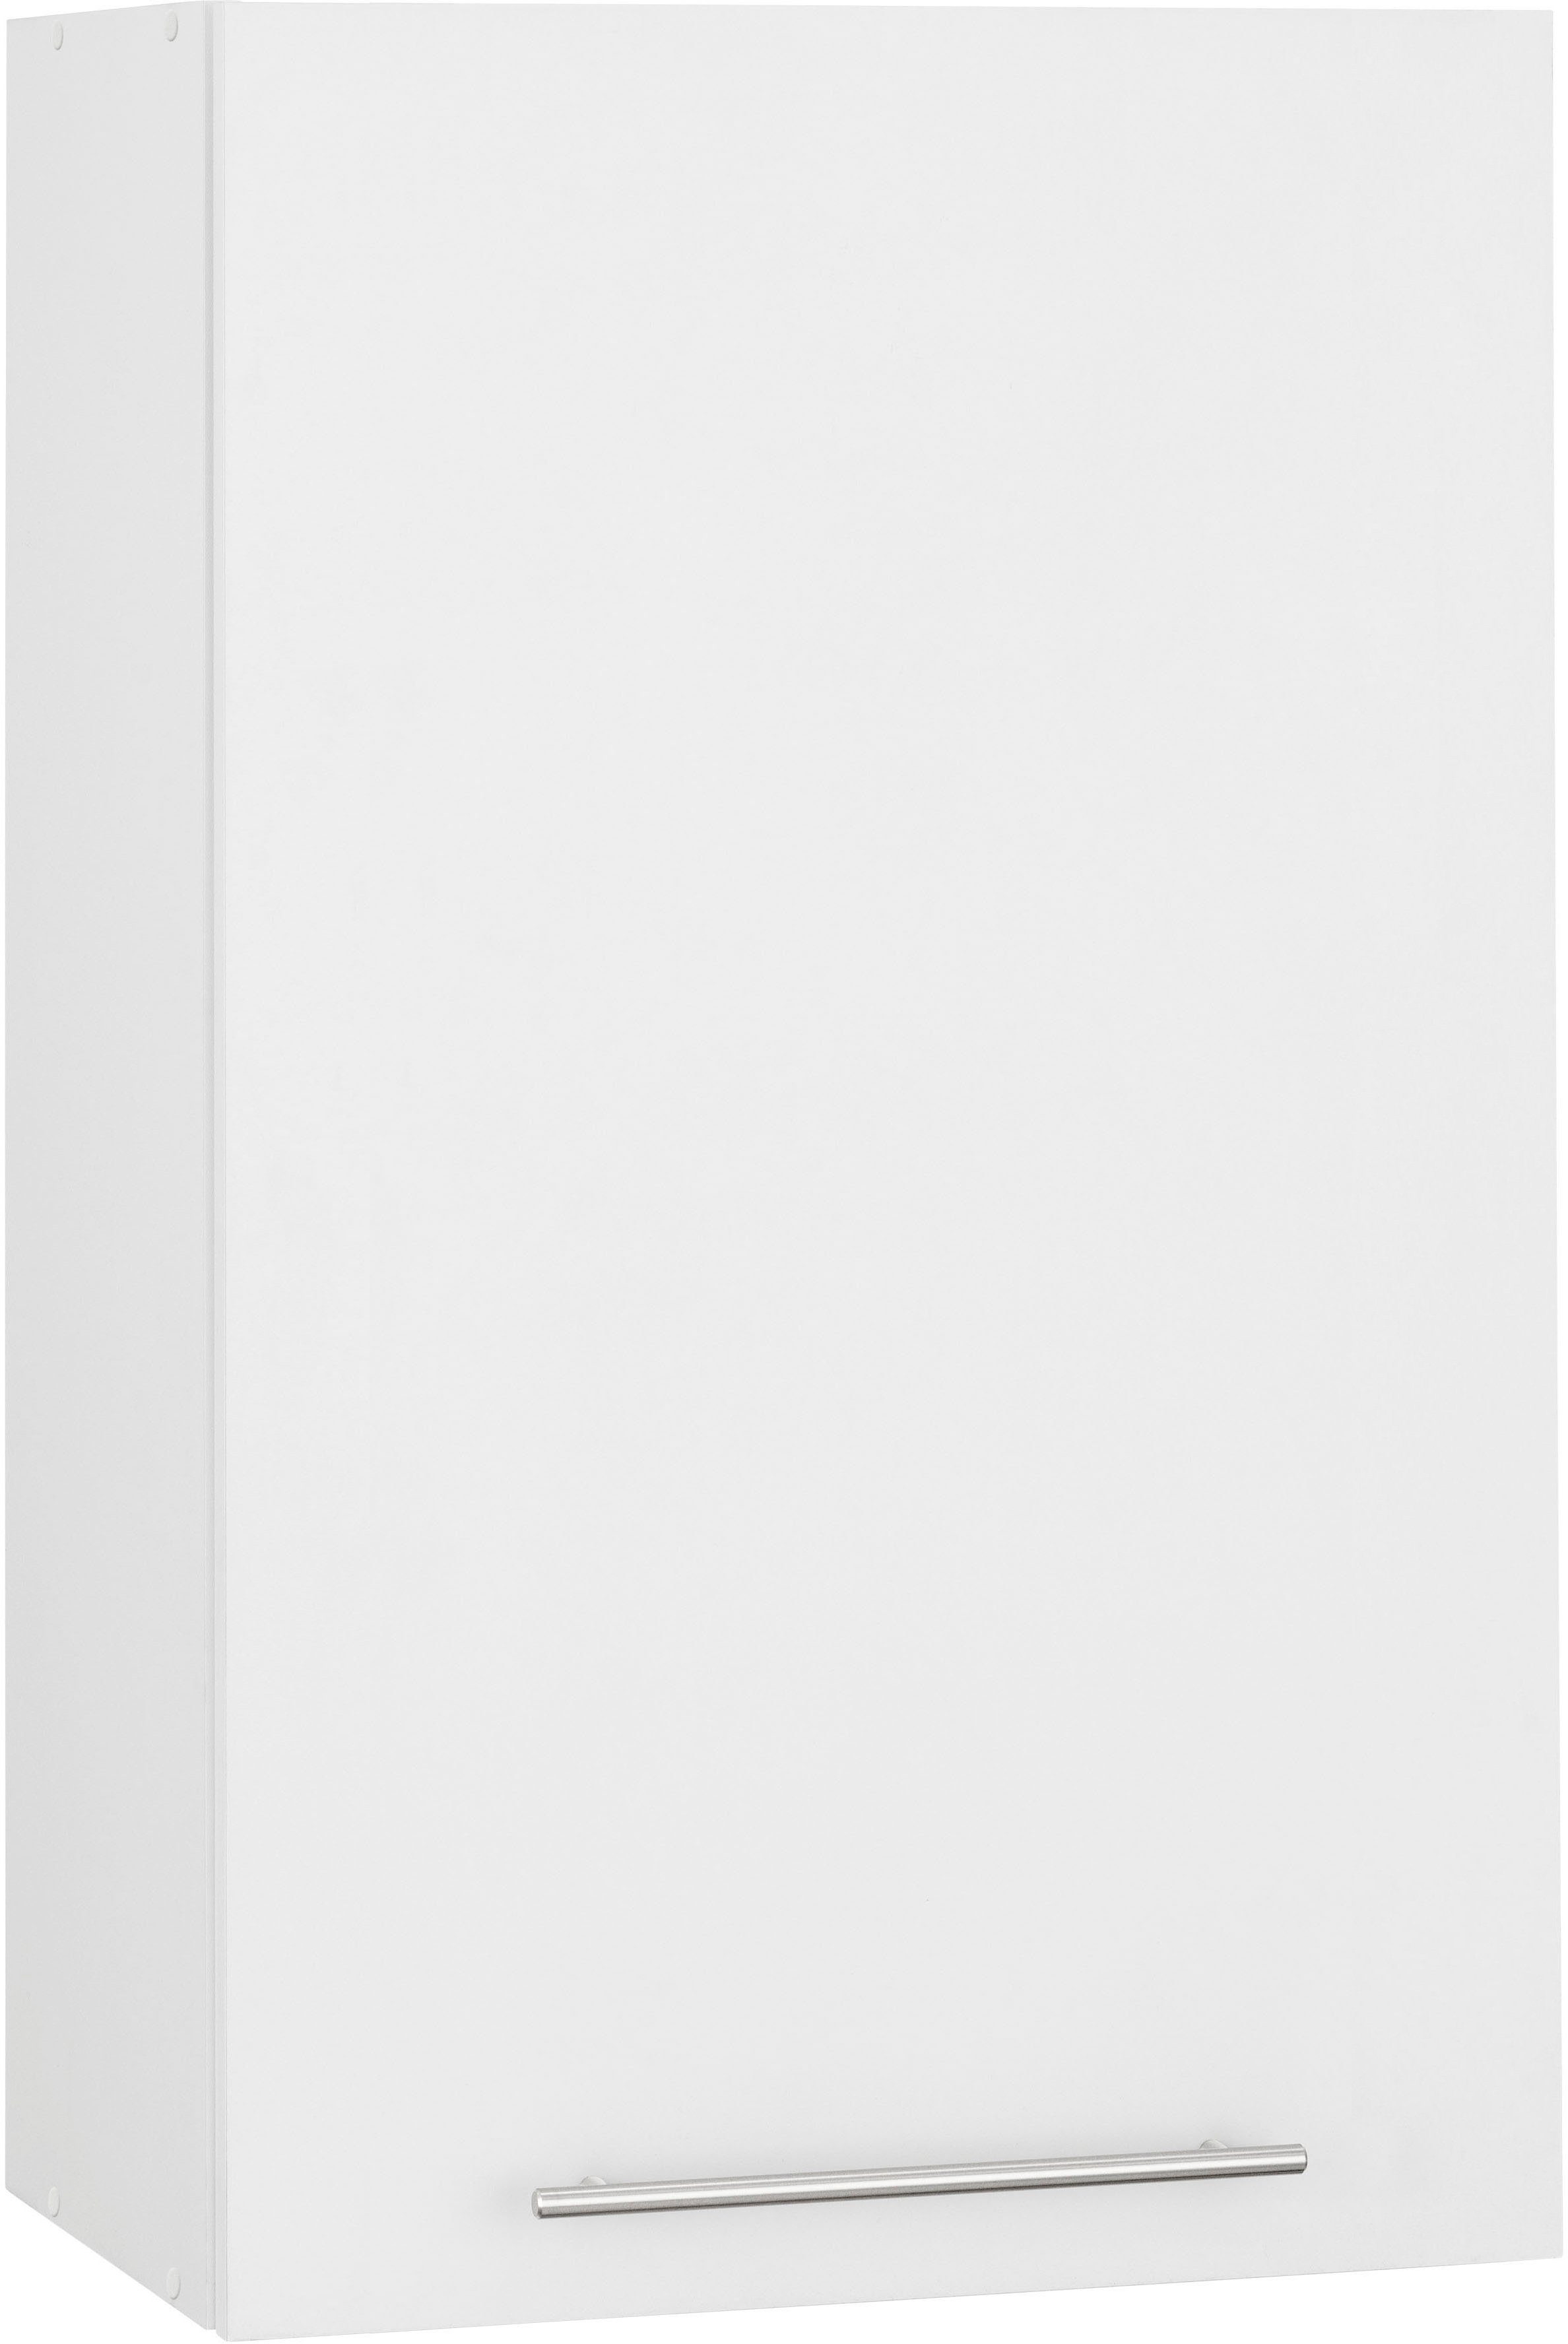 wiho Küchen Hängeschrank Unna 60 cm breit, 90 cm hoch weiß/weiß | Weiß | Hängeschränke